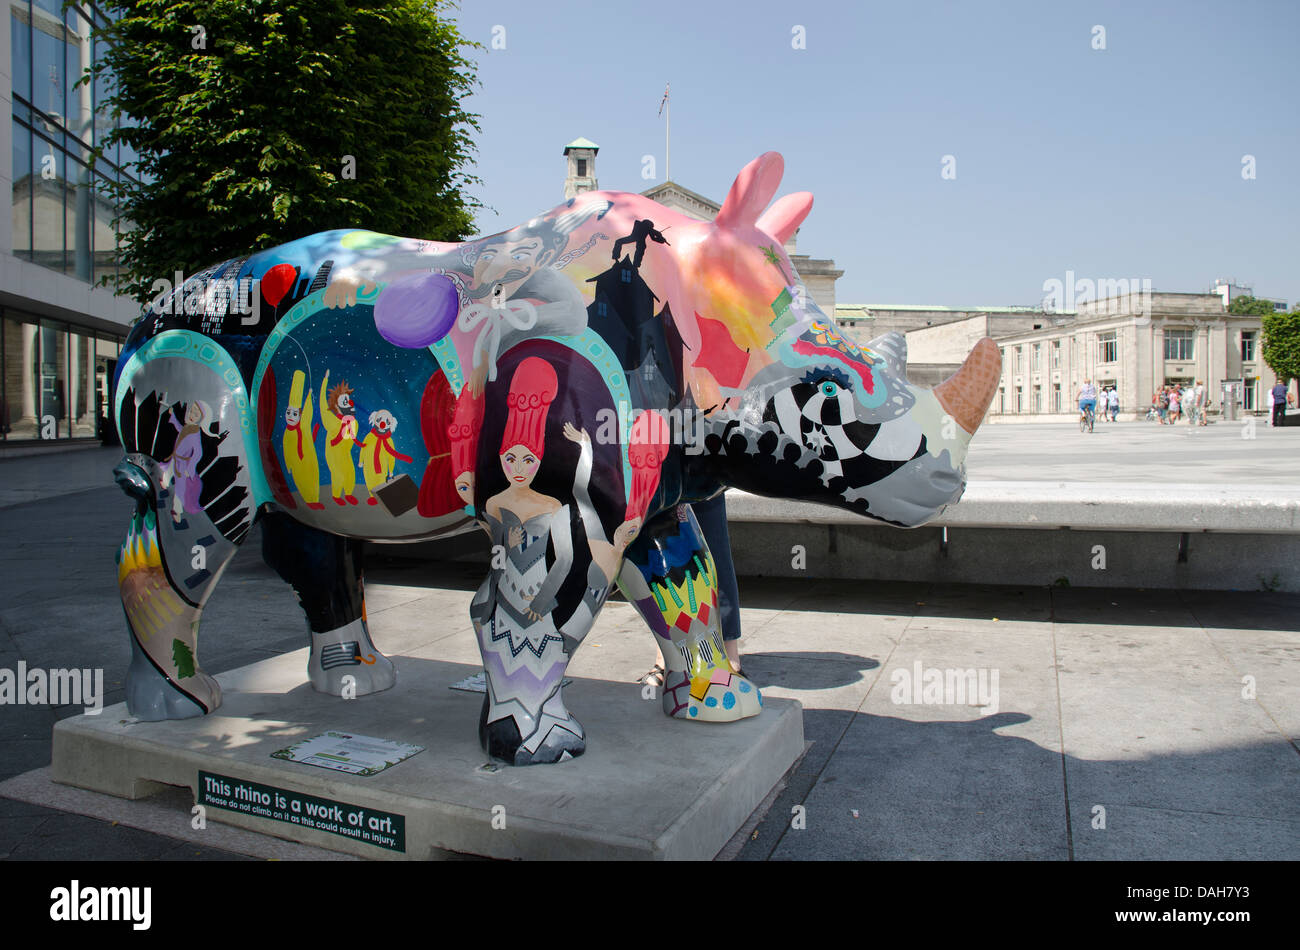 Marwell Wildlife sta portando Go! I rinoceronti, un mondo di classe di massa di arte pubblica evento, per le strade e parchi di Southampton. Foto Stock